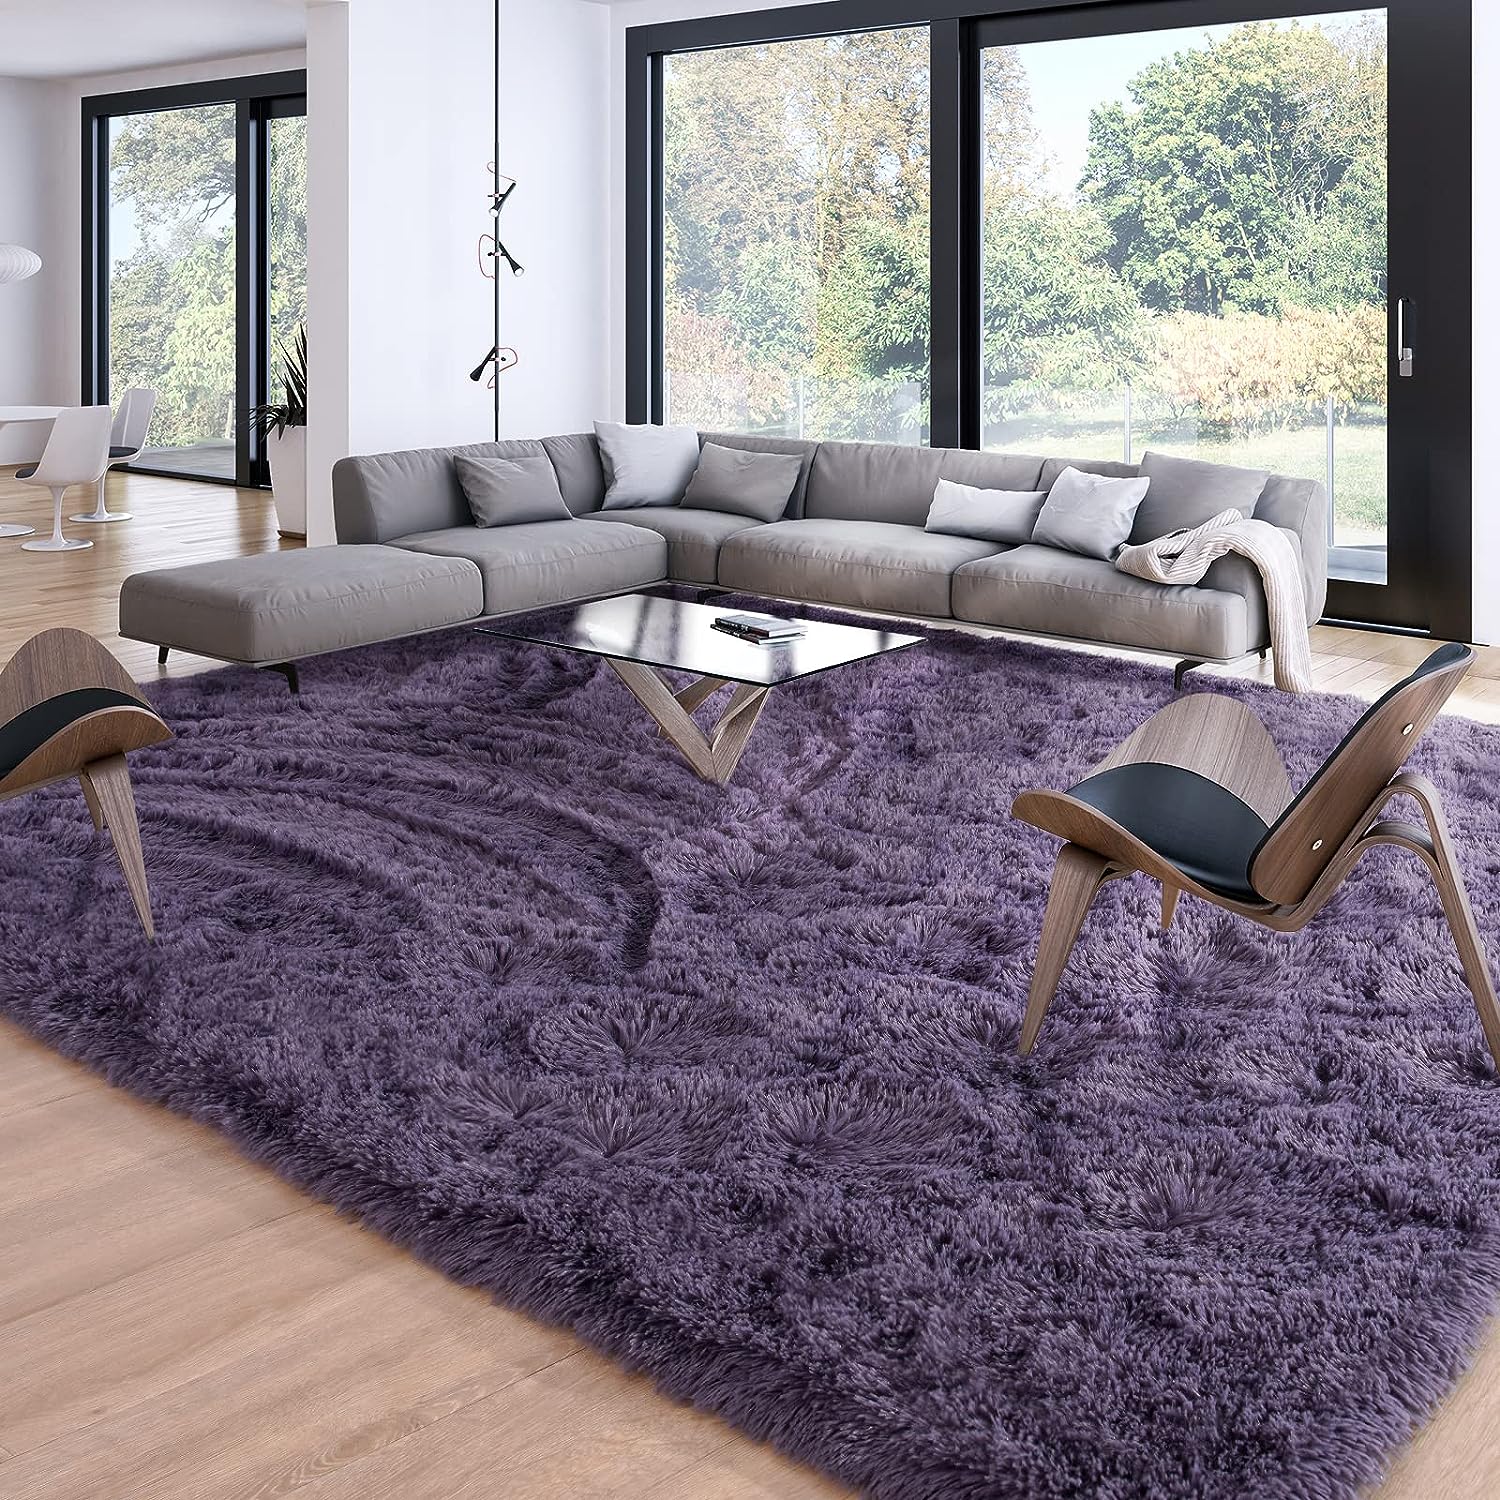 violet shaggy rug for living room